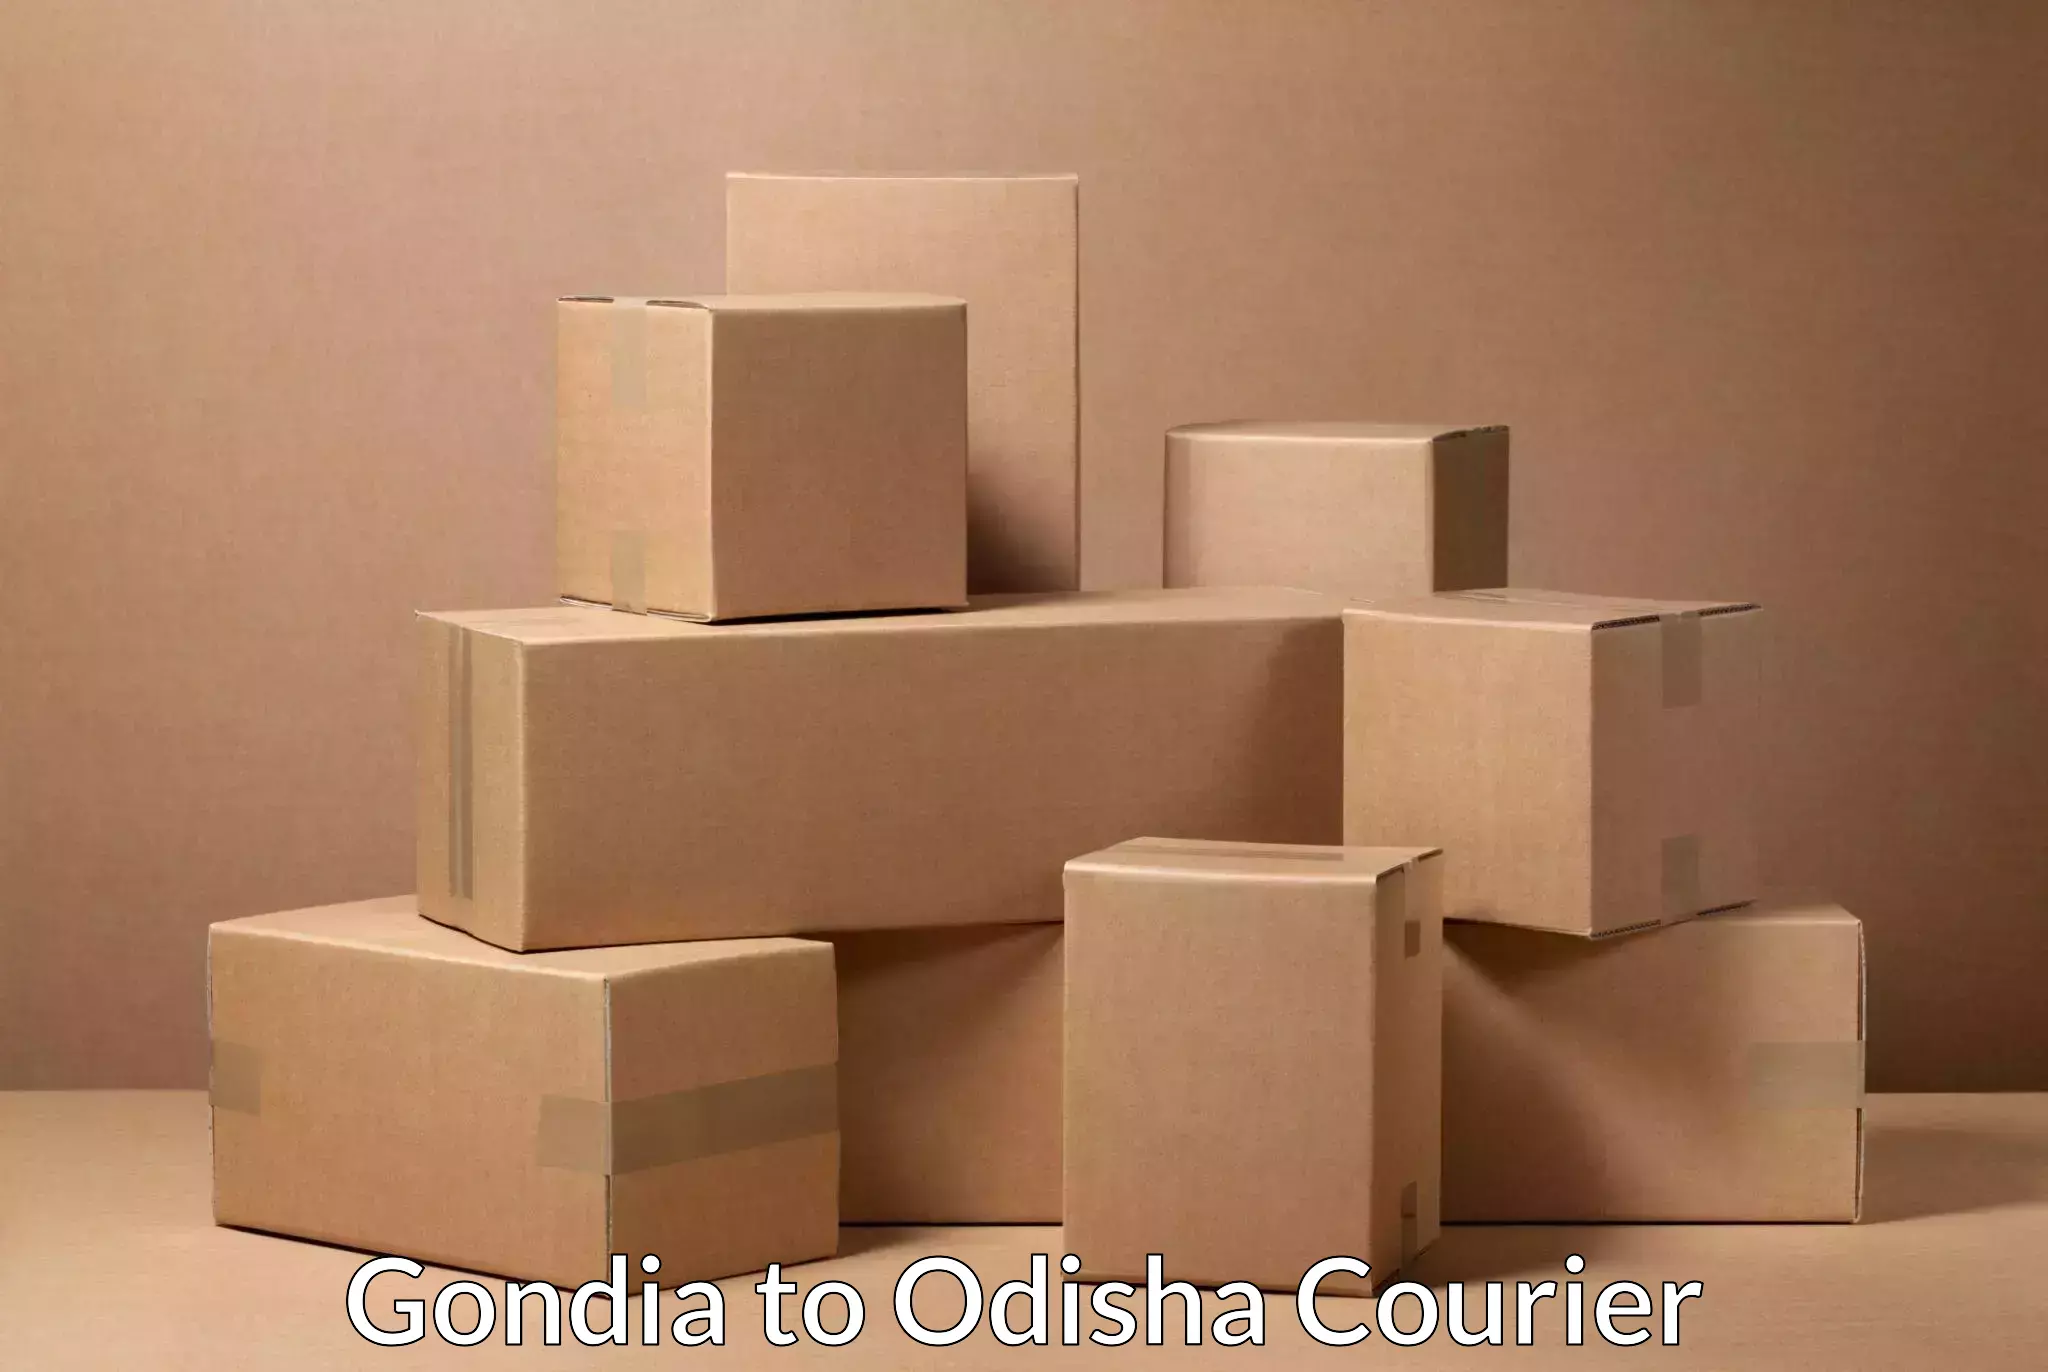 Advanced courier platforms Gondia to Kantamal